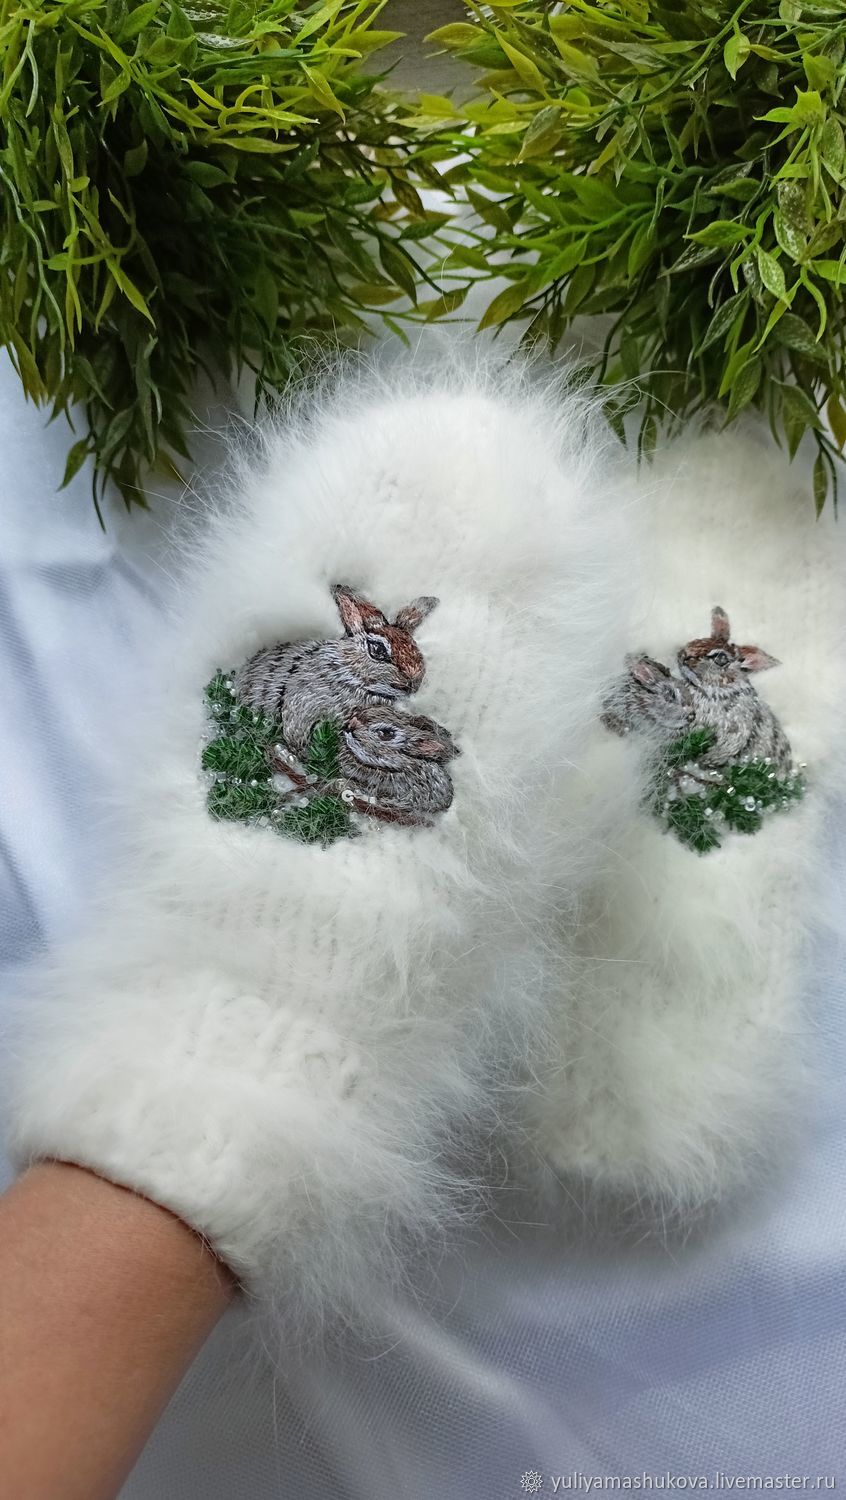 Валяные варежки из шерсти мериноса декорированы вышивкой бисером